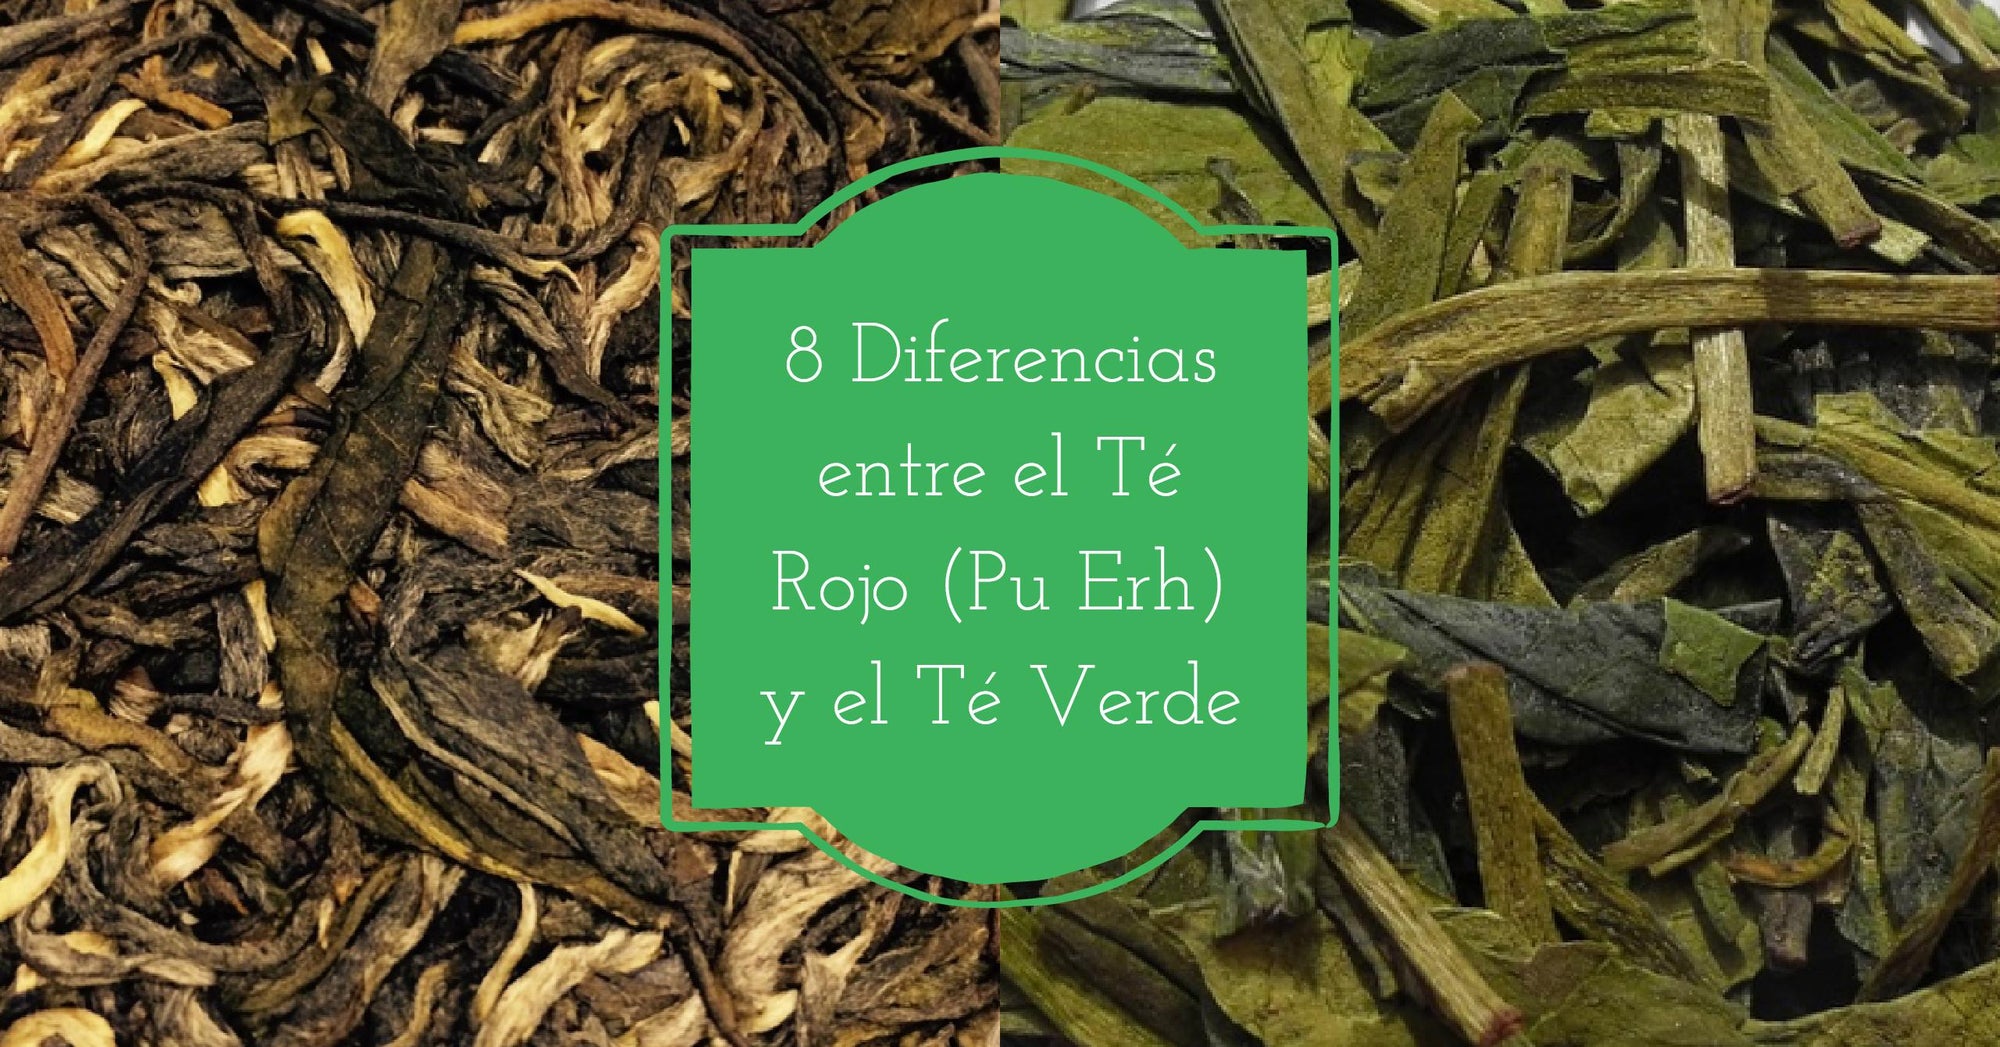 8 Diferencias entre el té rojo y el té verde